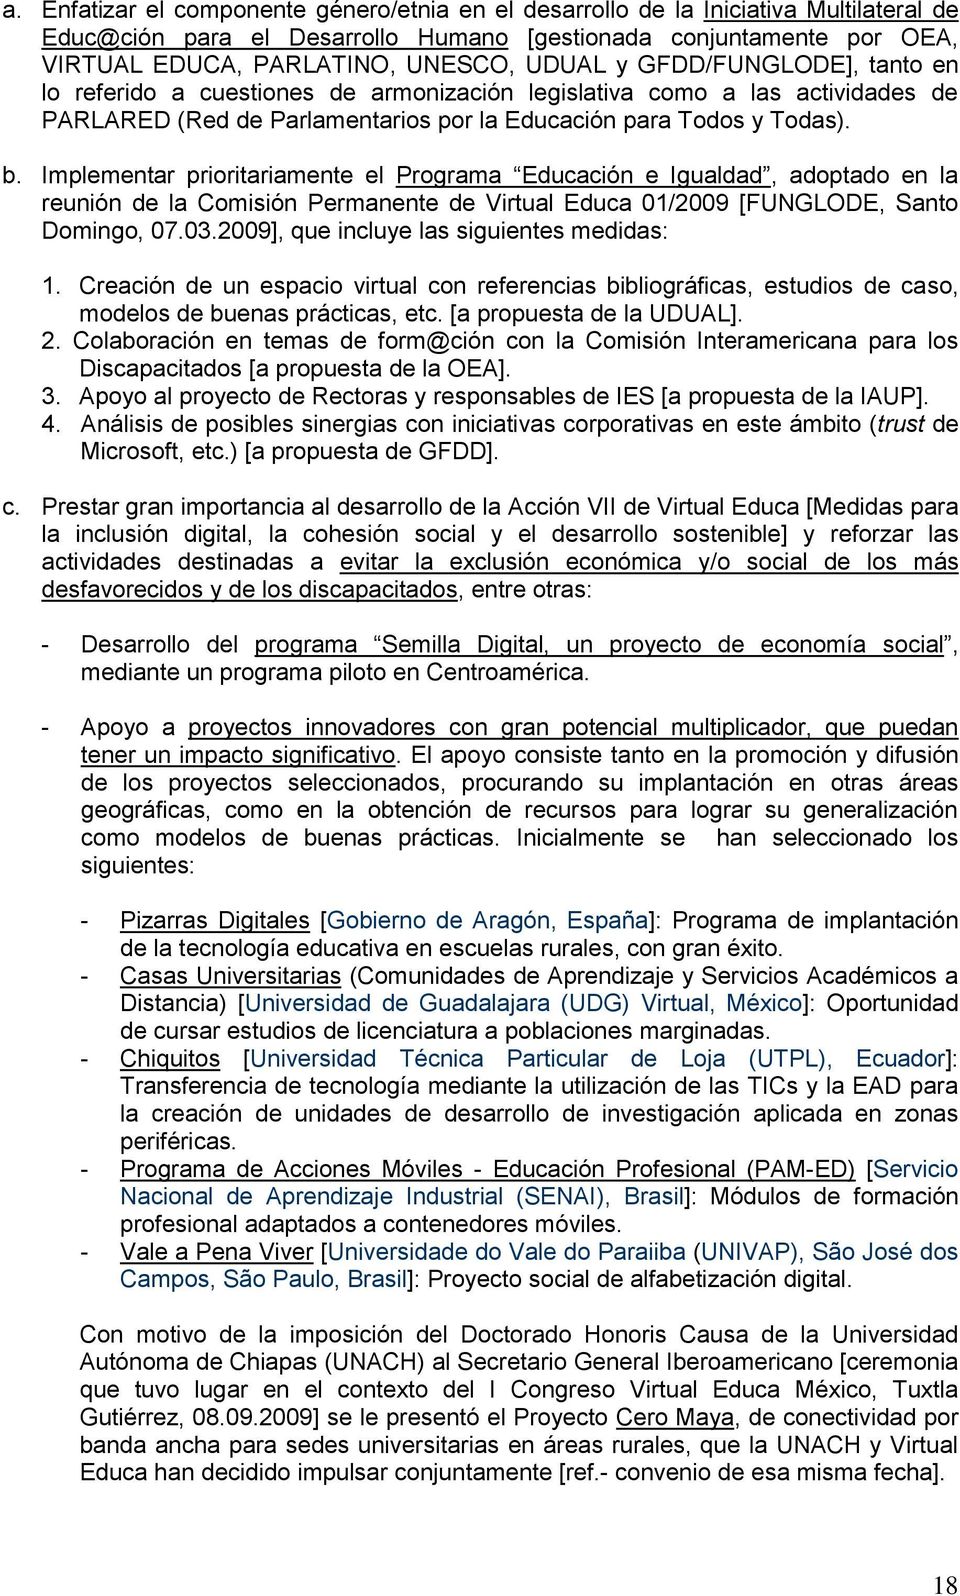 Implementar prioritariamente el Programa Educación e Igualdad, adoptado en la reunión de la Comisión Permanente de Virtual Educa 01/2009 [FUNGLODE, Santo Domingo, 07.03.